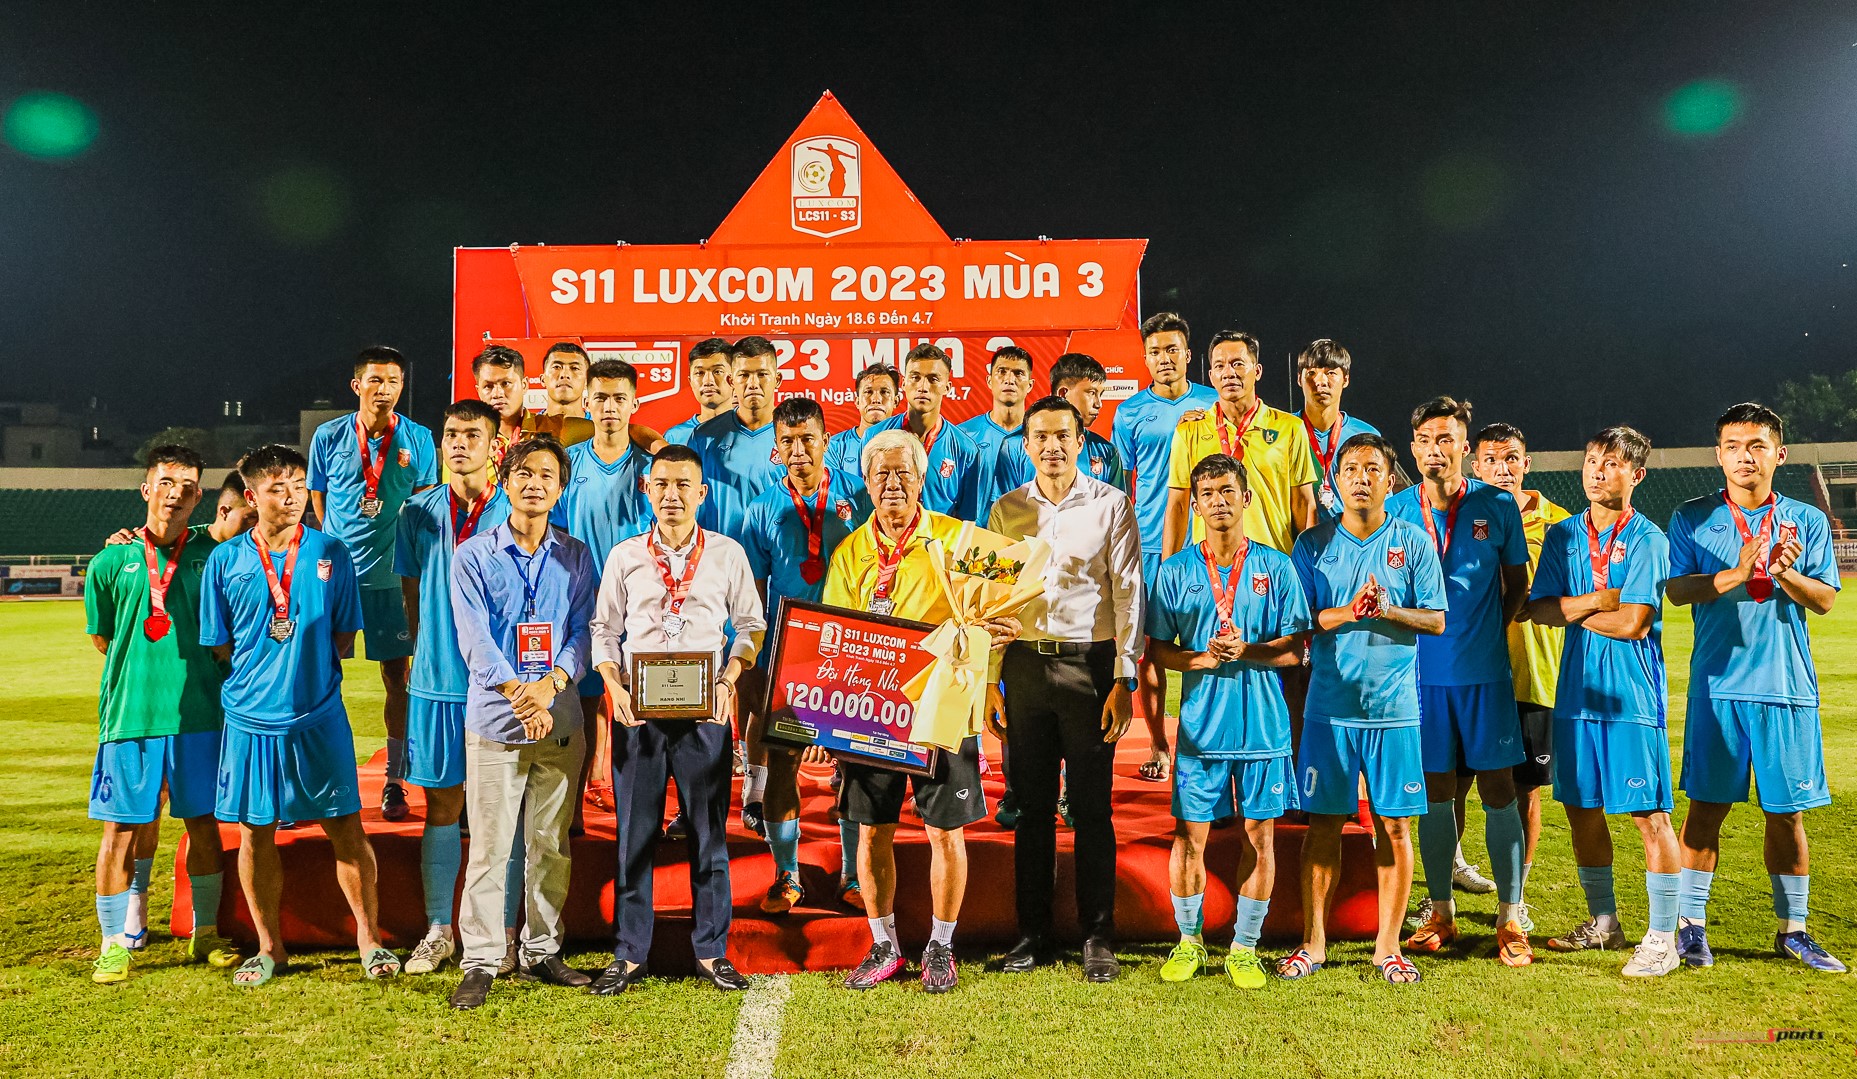 “Dàn sao” Định Hướng FC giành ngôi Á quân sau thất bại trên chấm luân lưu trước Luxcom FC. Ảnh: Đình Thảo